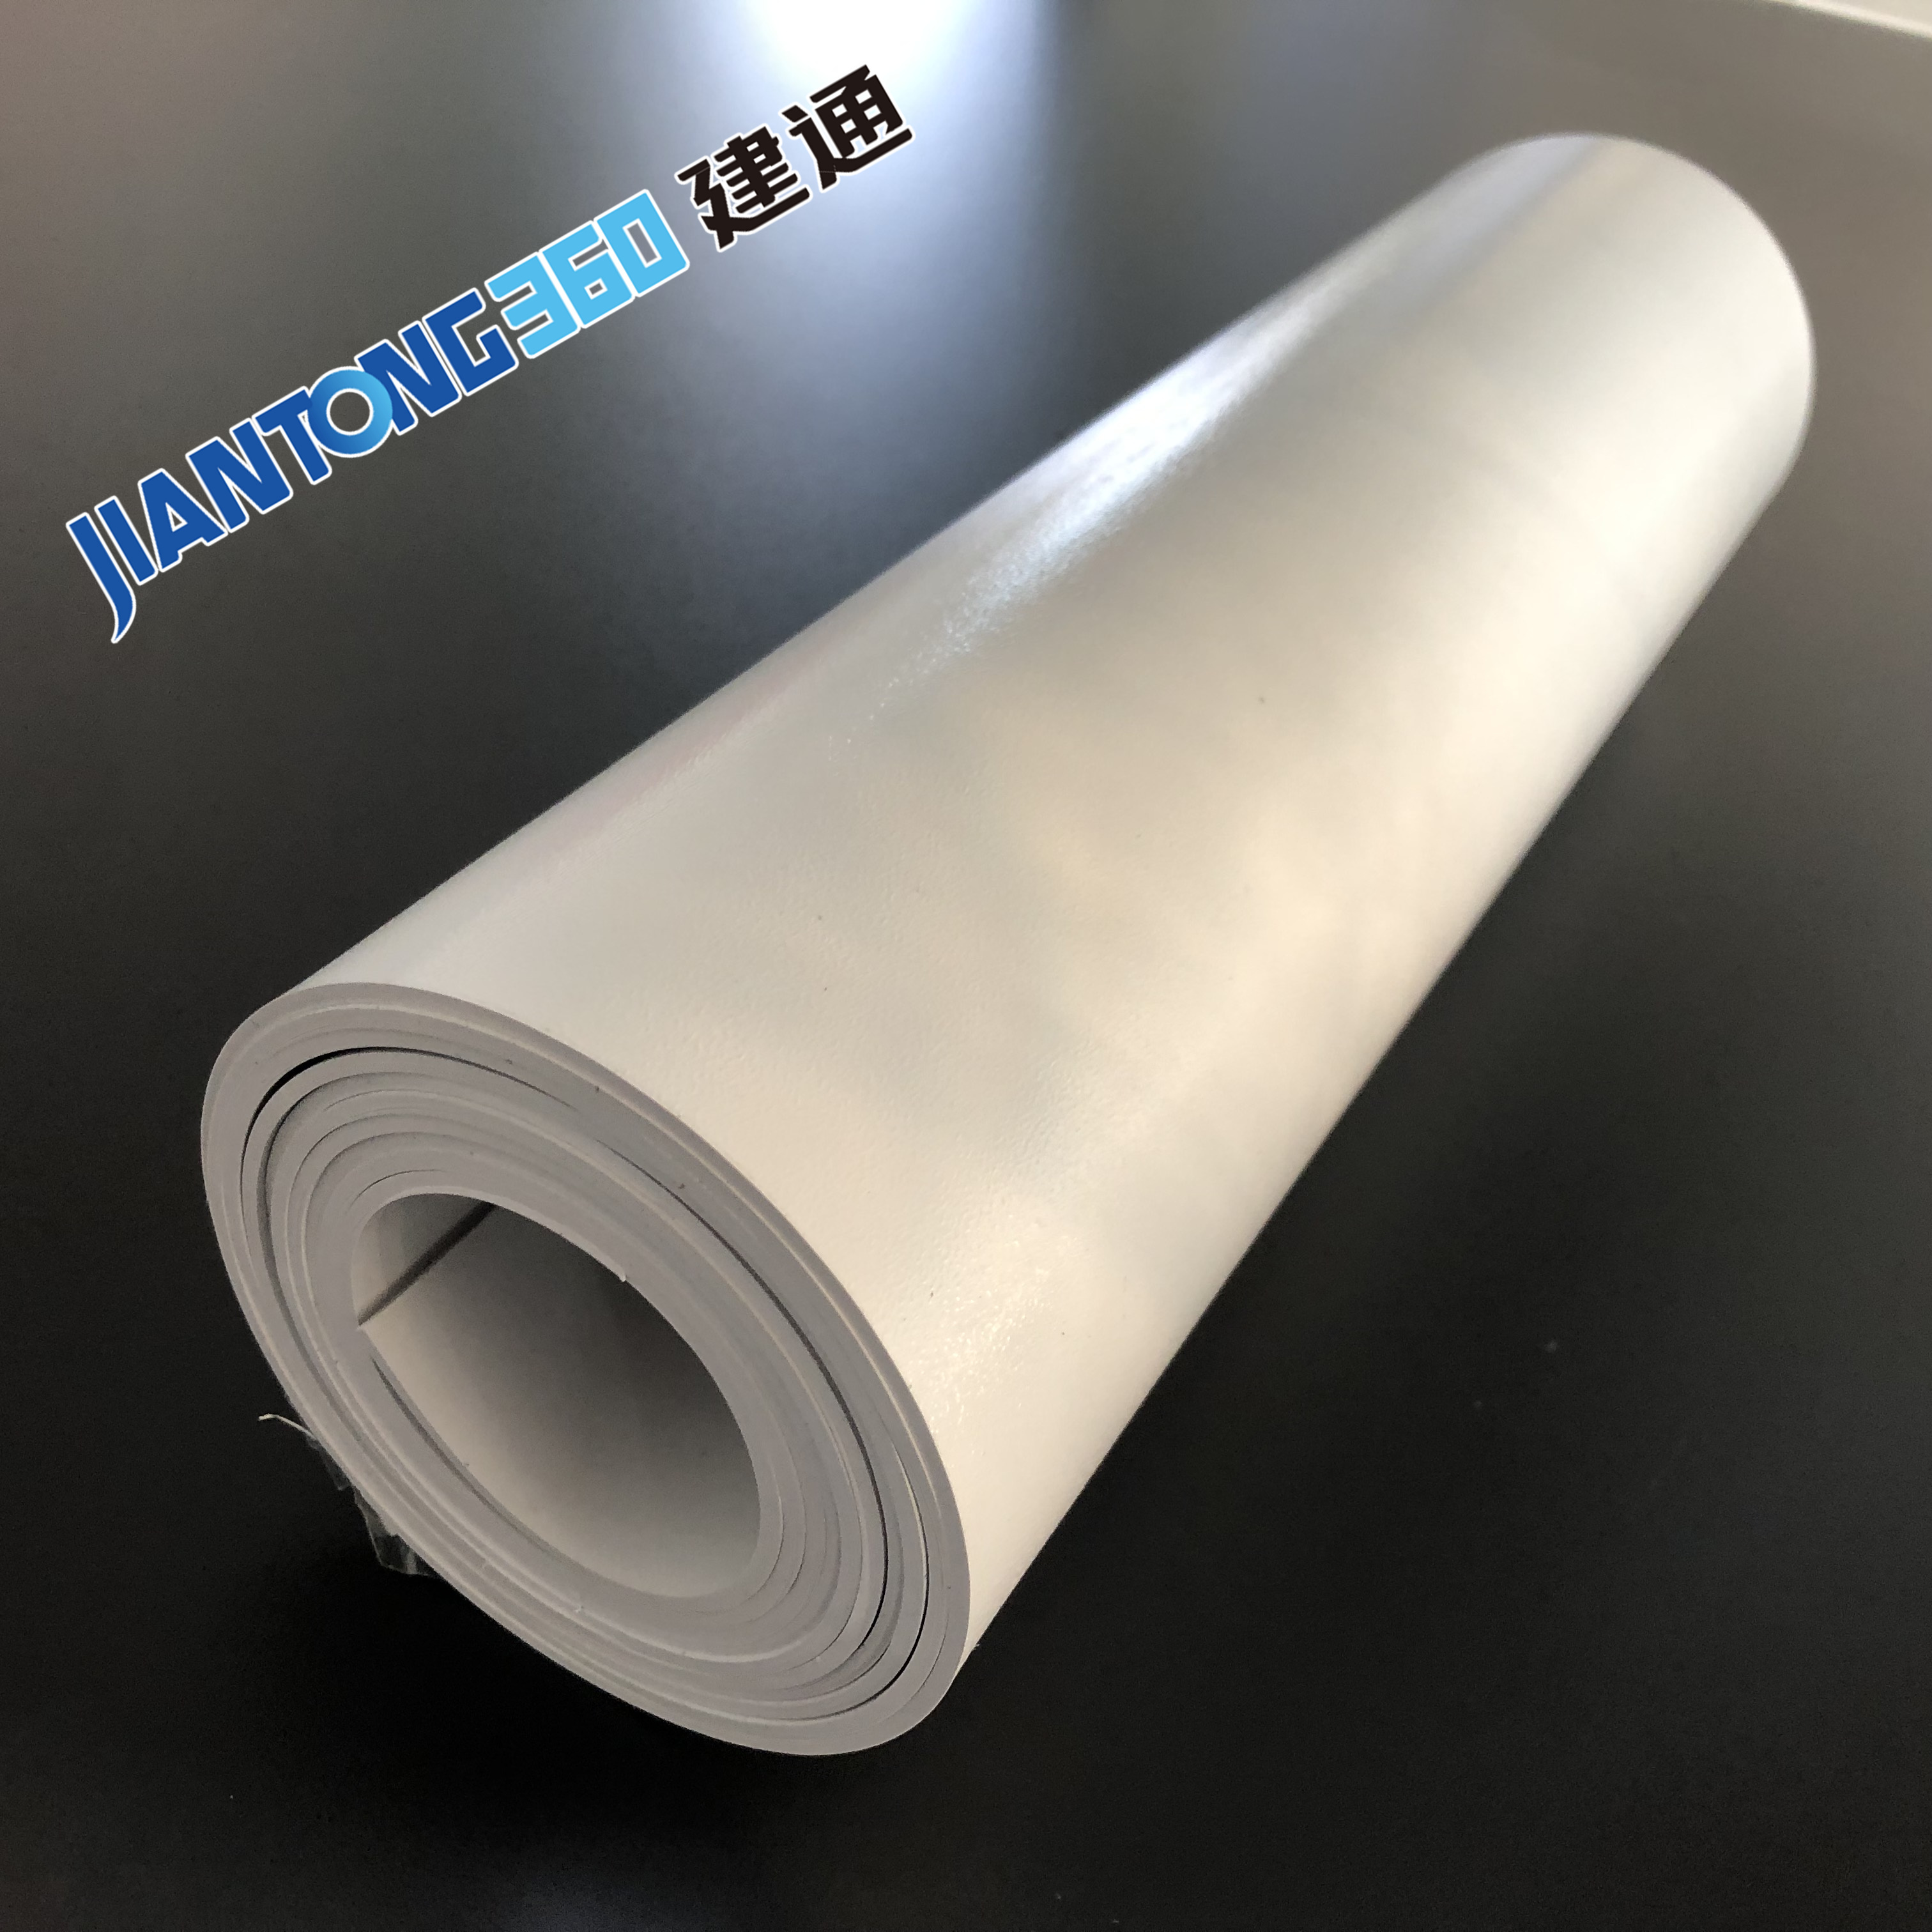 ซื้อPVC Geomembrane liner,PVC Geomembrane linerราคา,PVC Geomembrane linerแบรนด์,PVC Geomembrane linerผู้ผลิต,PVC Geomembrane linerสภาวะตลาด,PVC Geomembrane linerบริษัท